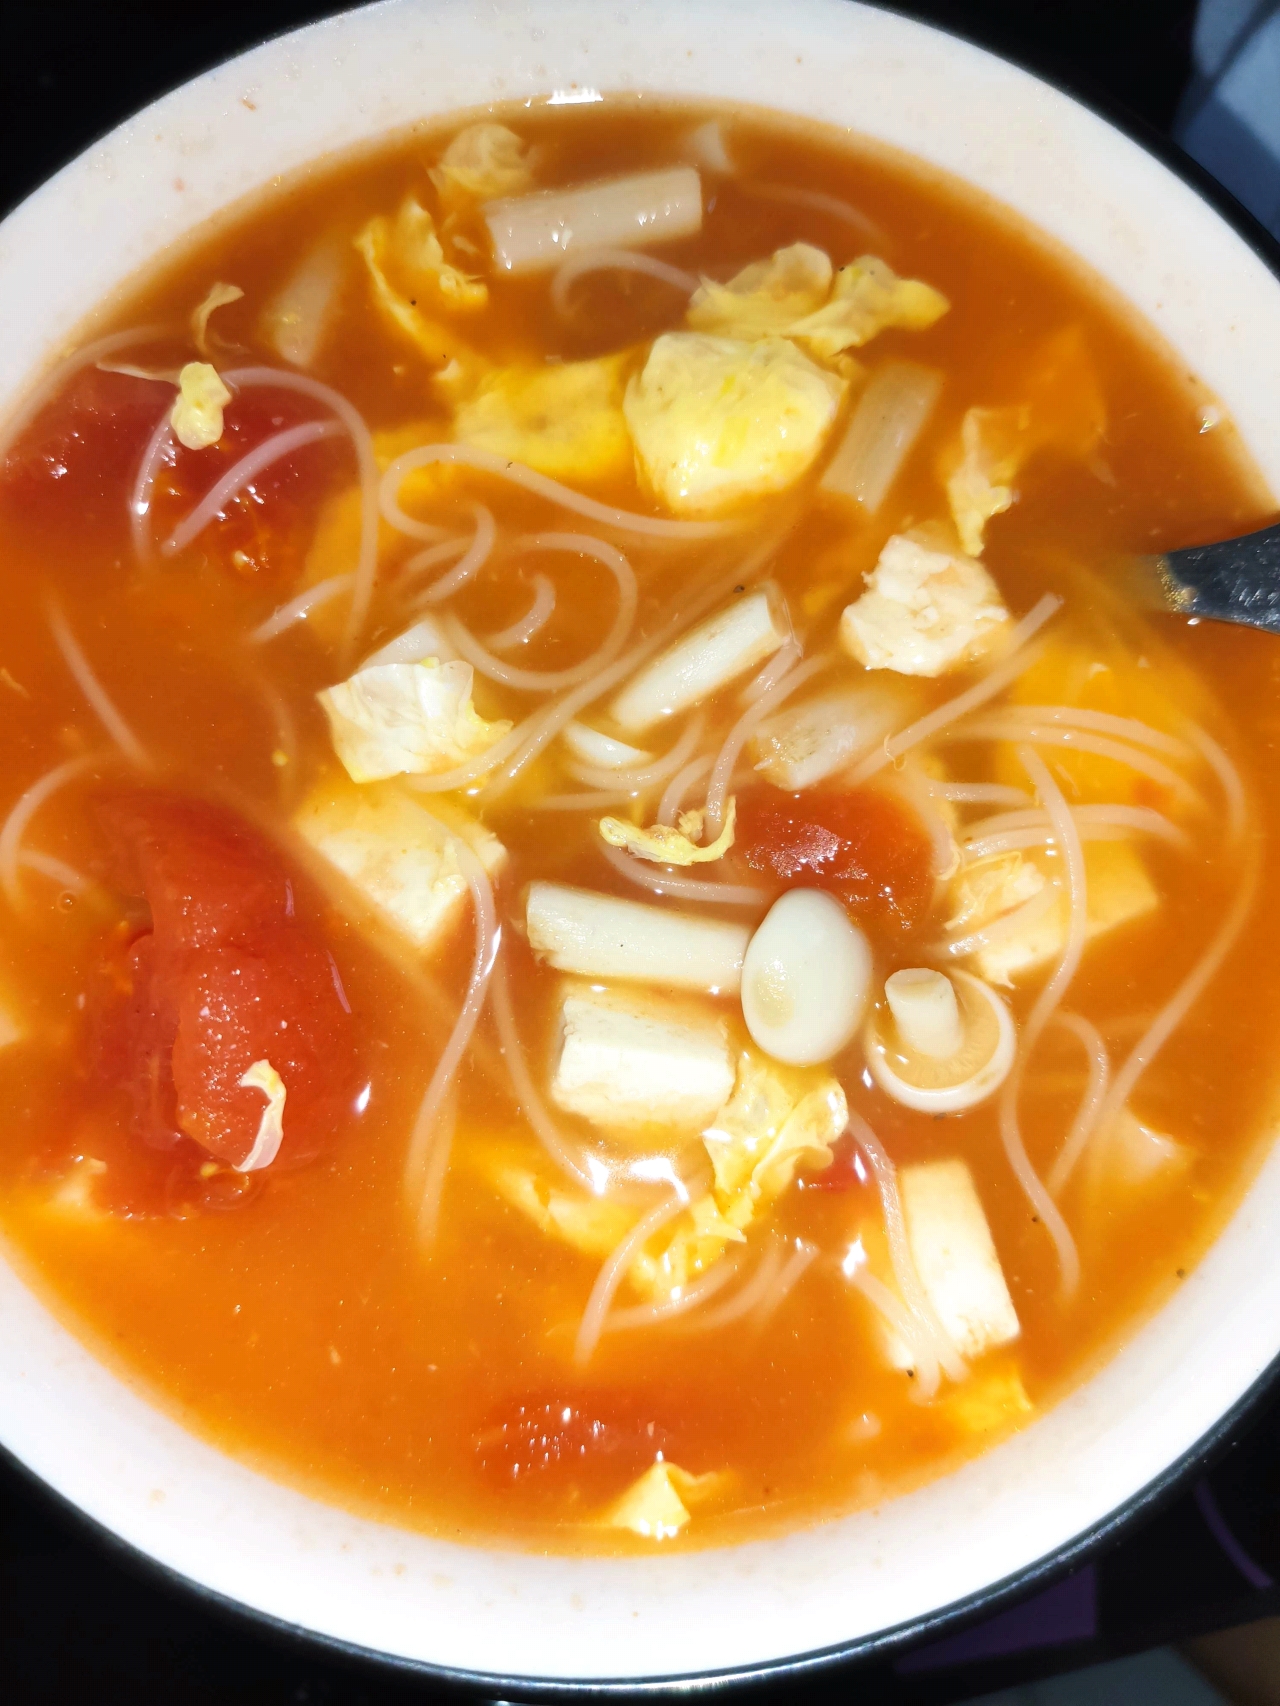 味鲜汤浓的番茄菌菇豆腐汤